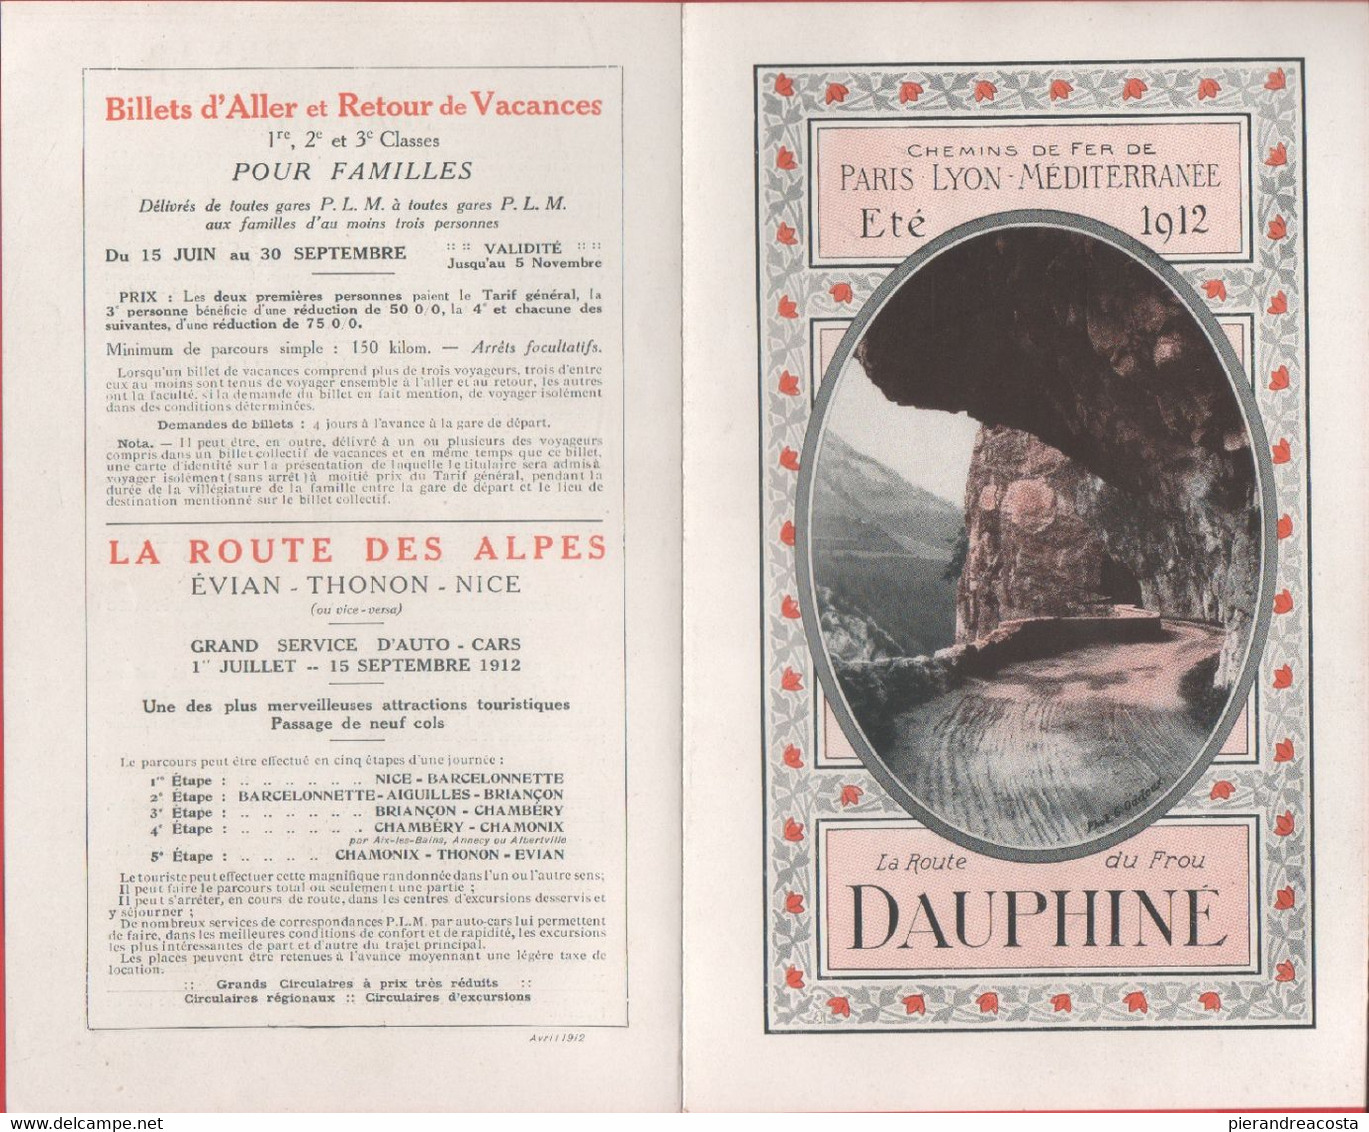 Chemin De Fer Paris Lyon-Mediterranne. La Route Du Frou Dauphiné. Eté 1914 - Europa